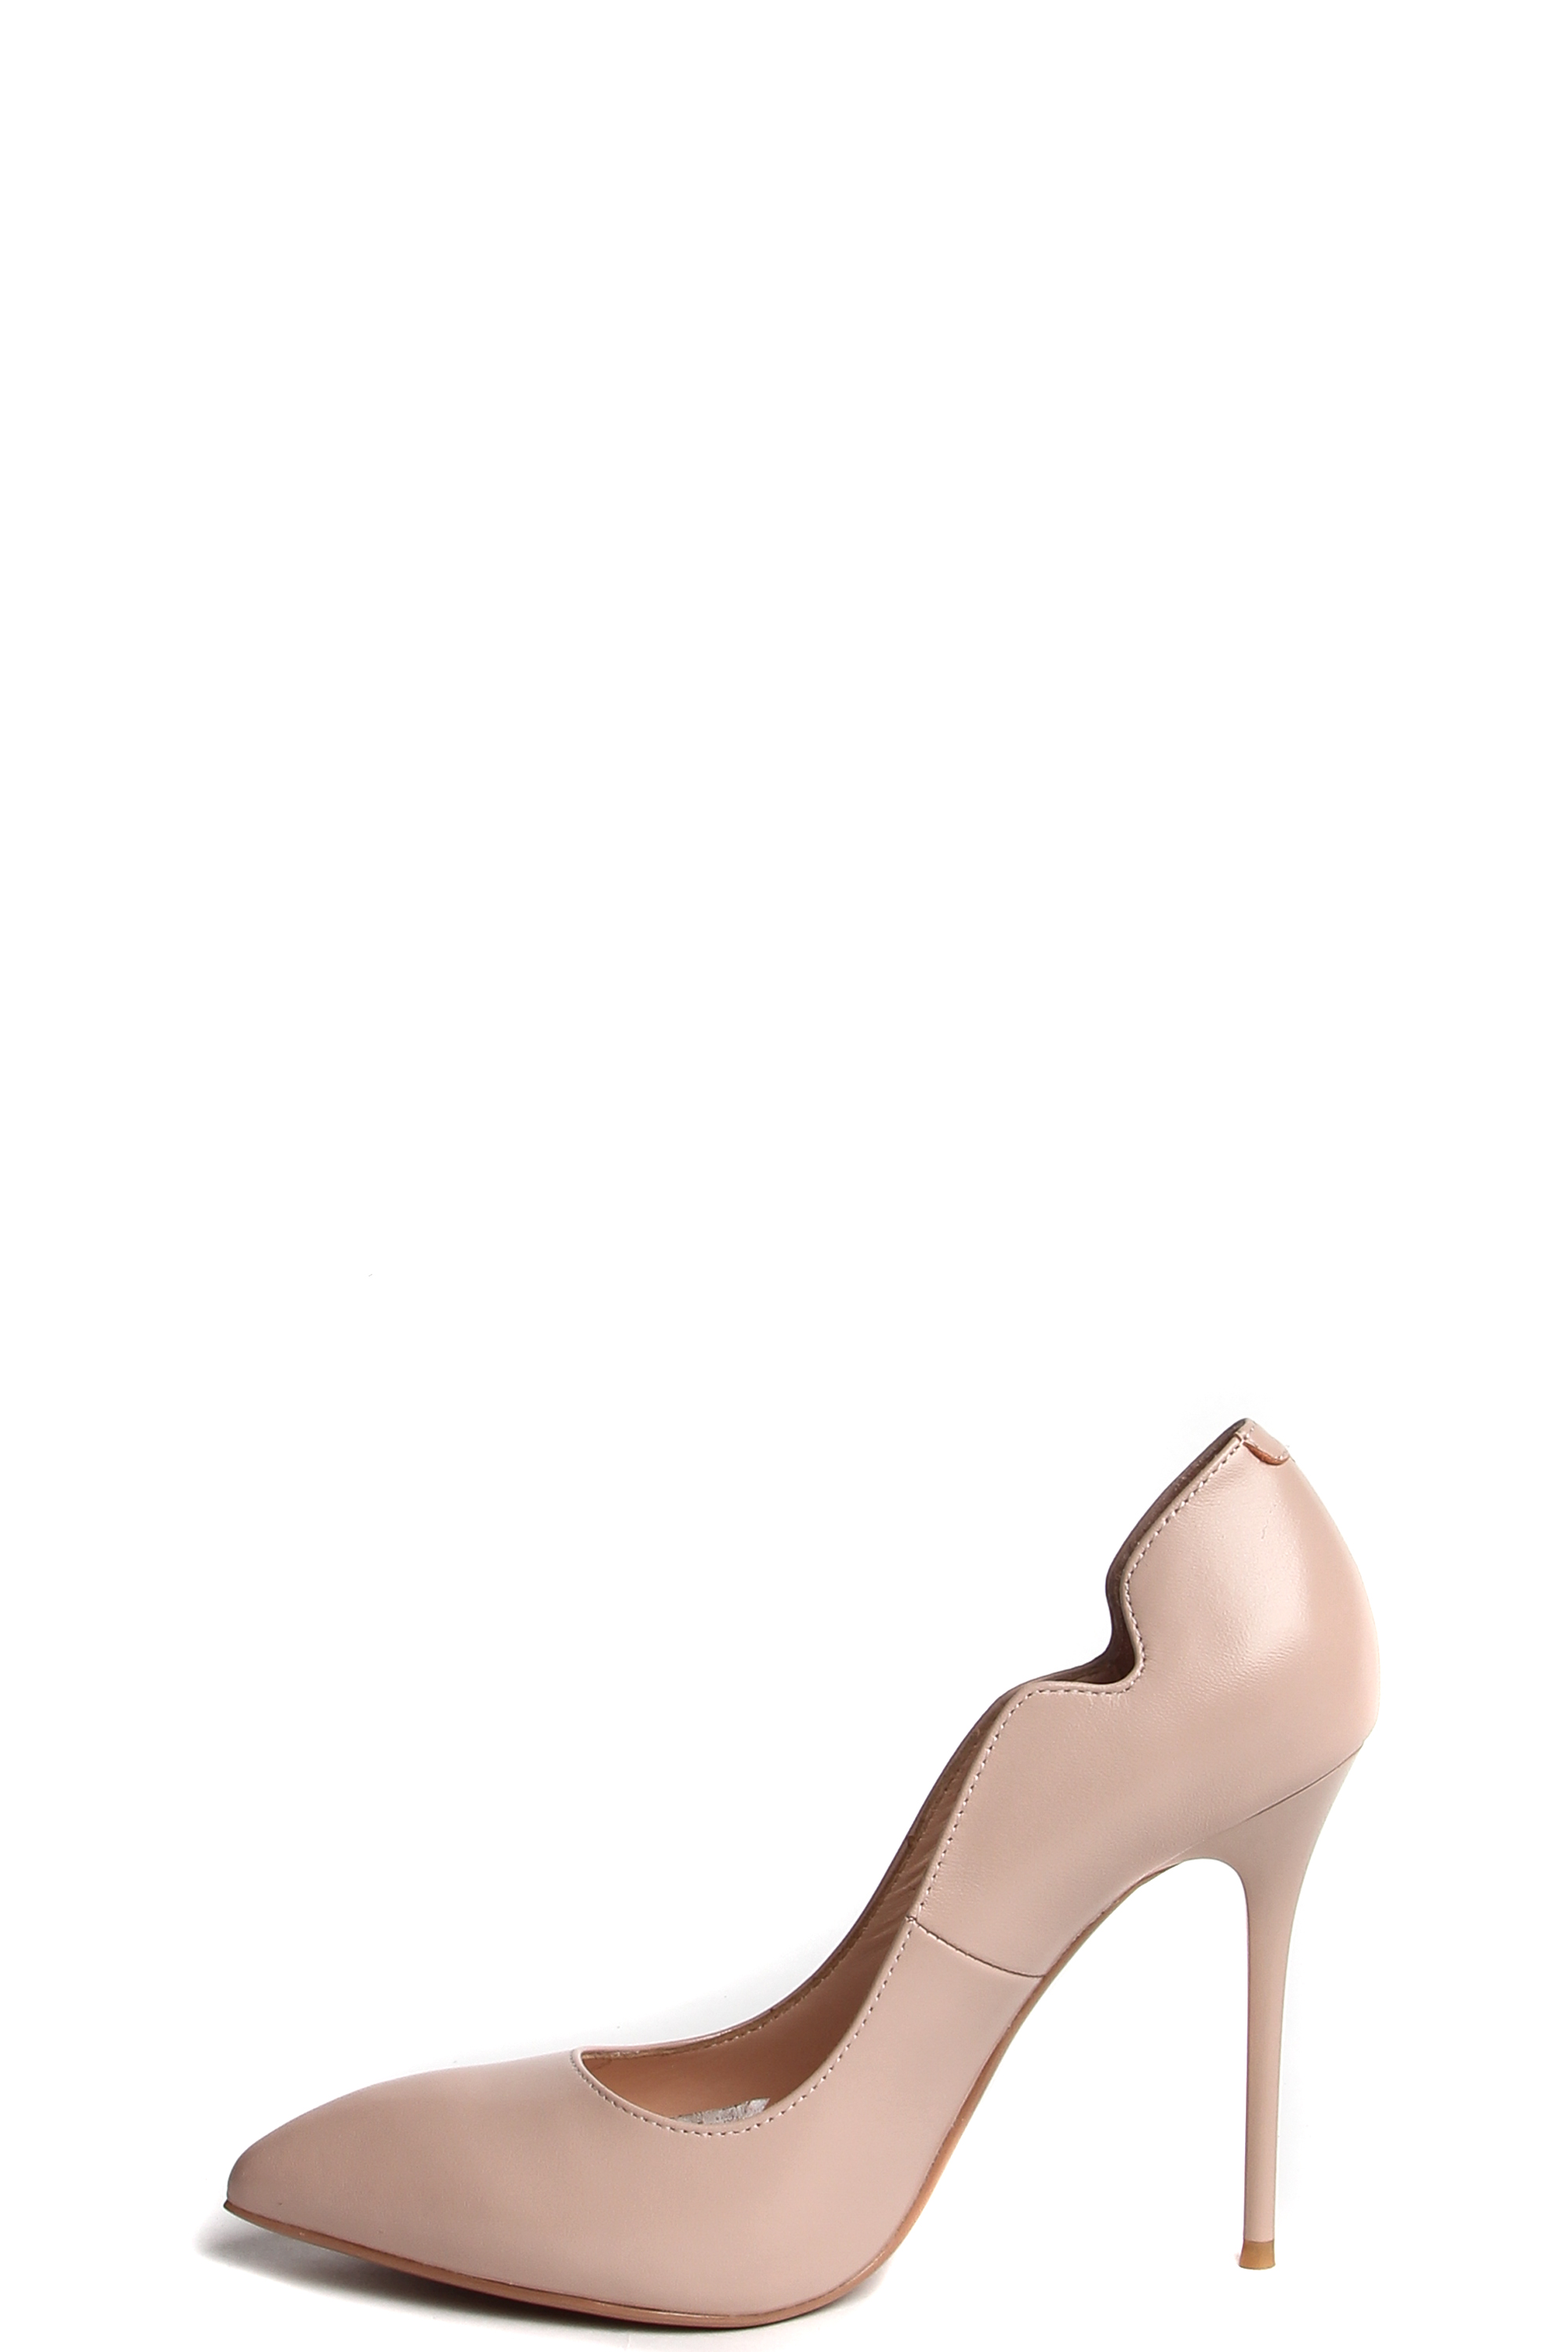 Туфли MILANA 181001-2-1491 розовый - купить 10990